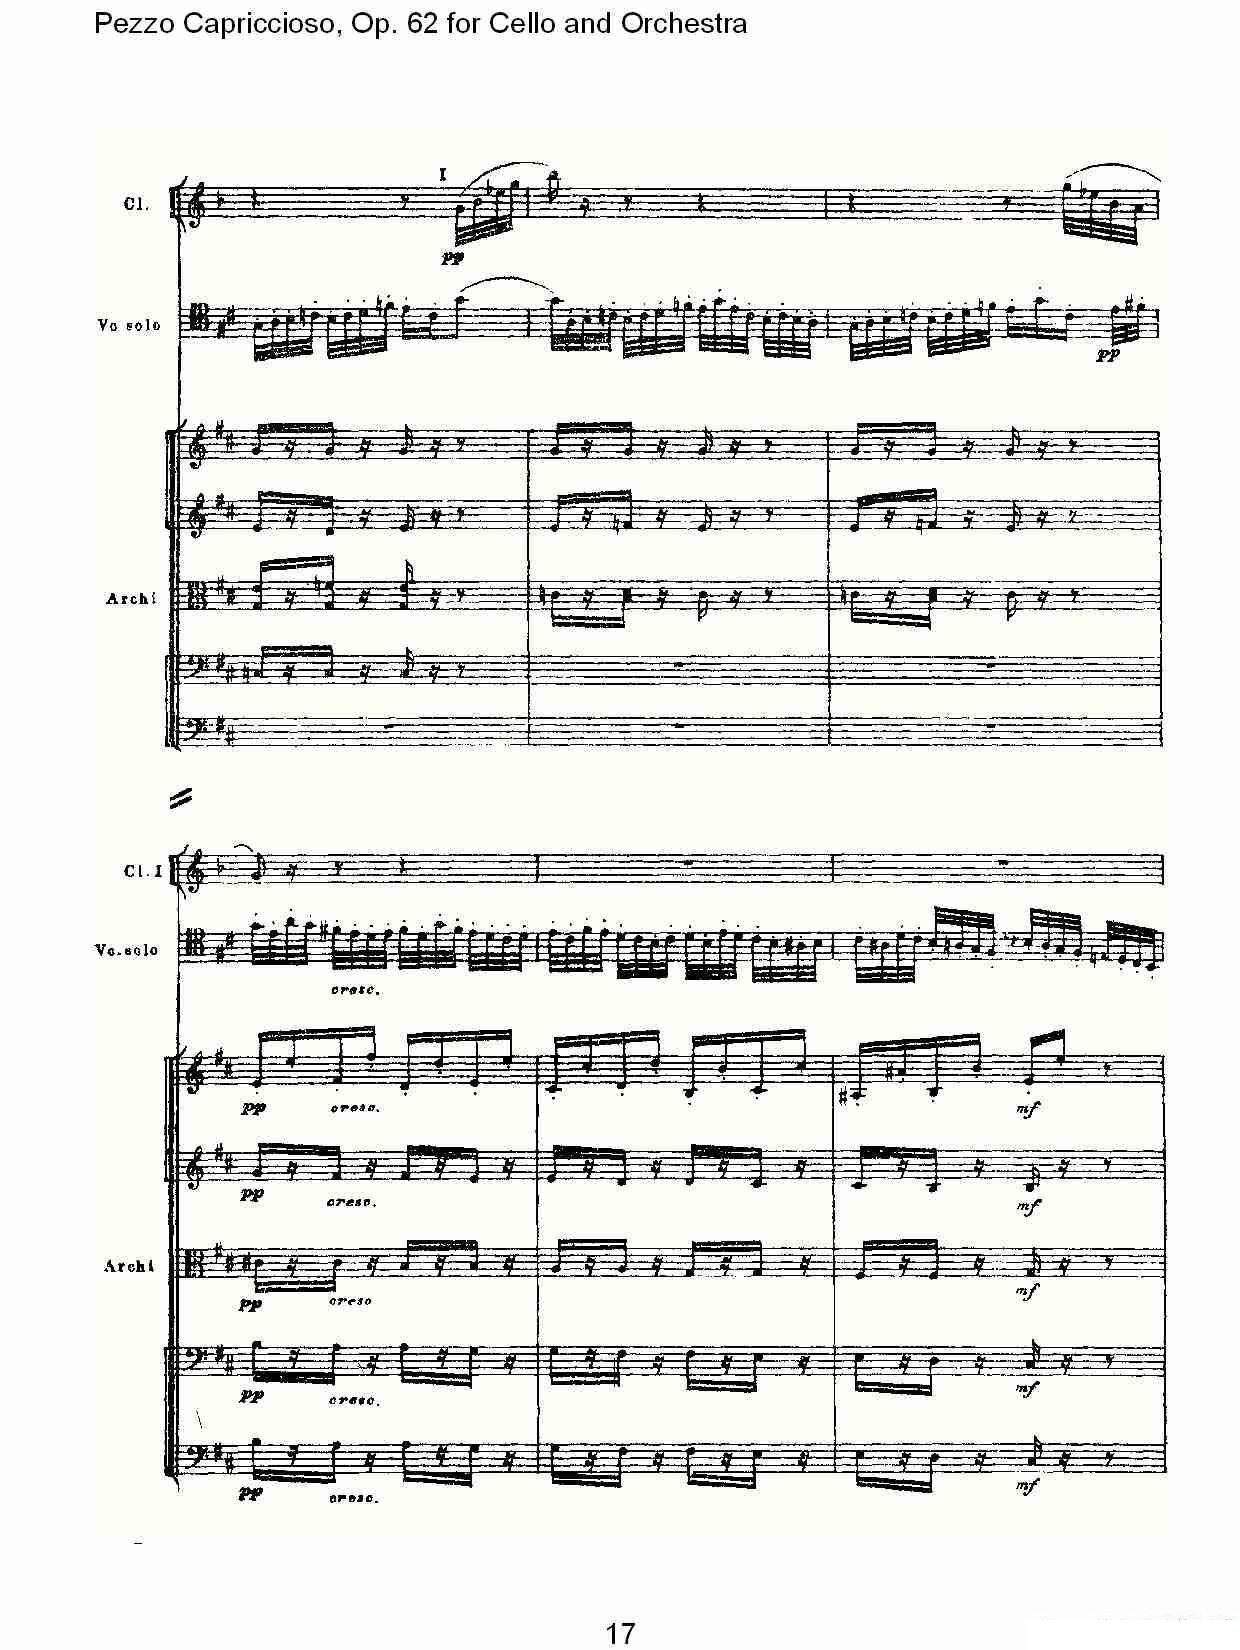 彼得·伊利奇·柴可夫斯基《Pezzo Capriccioso, Op.62》提琴谱（第17页）